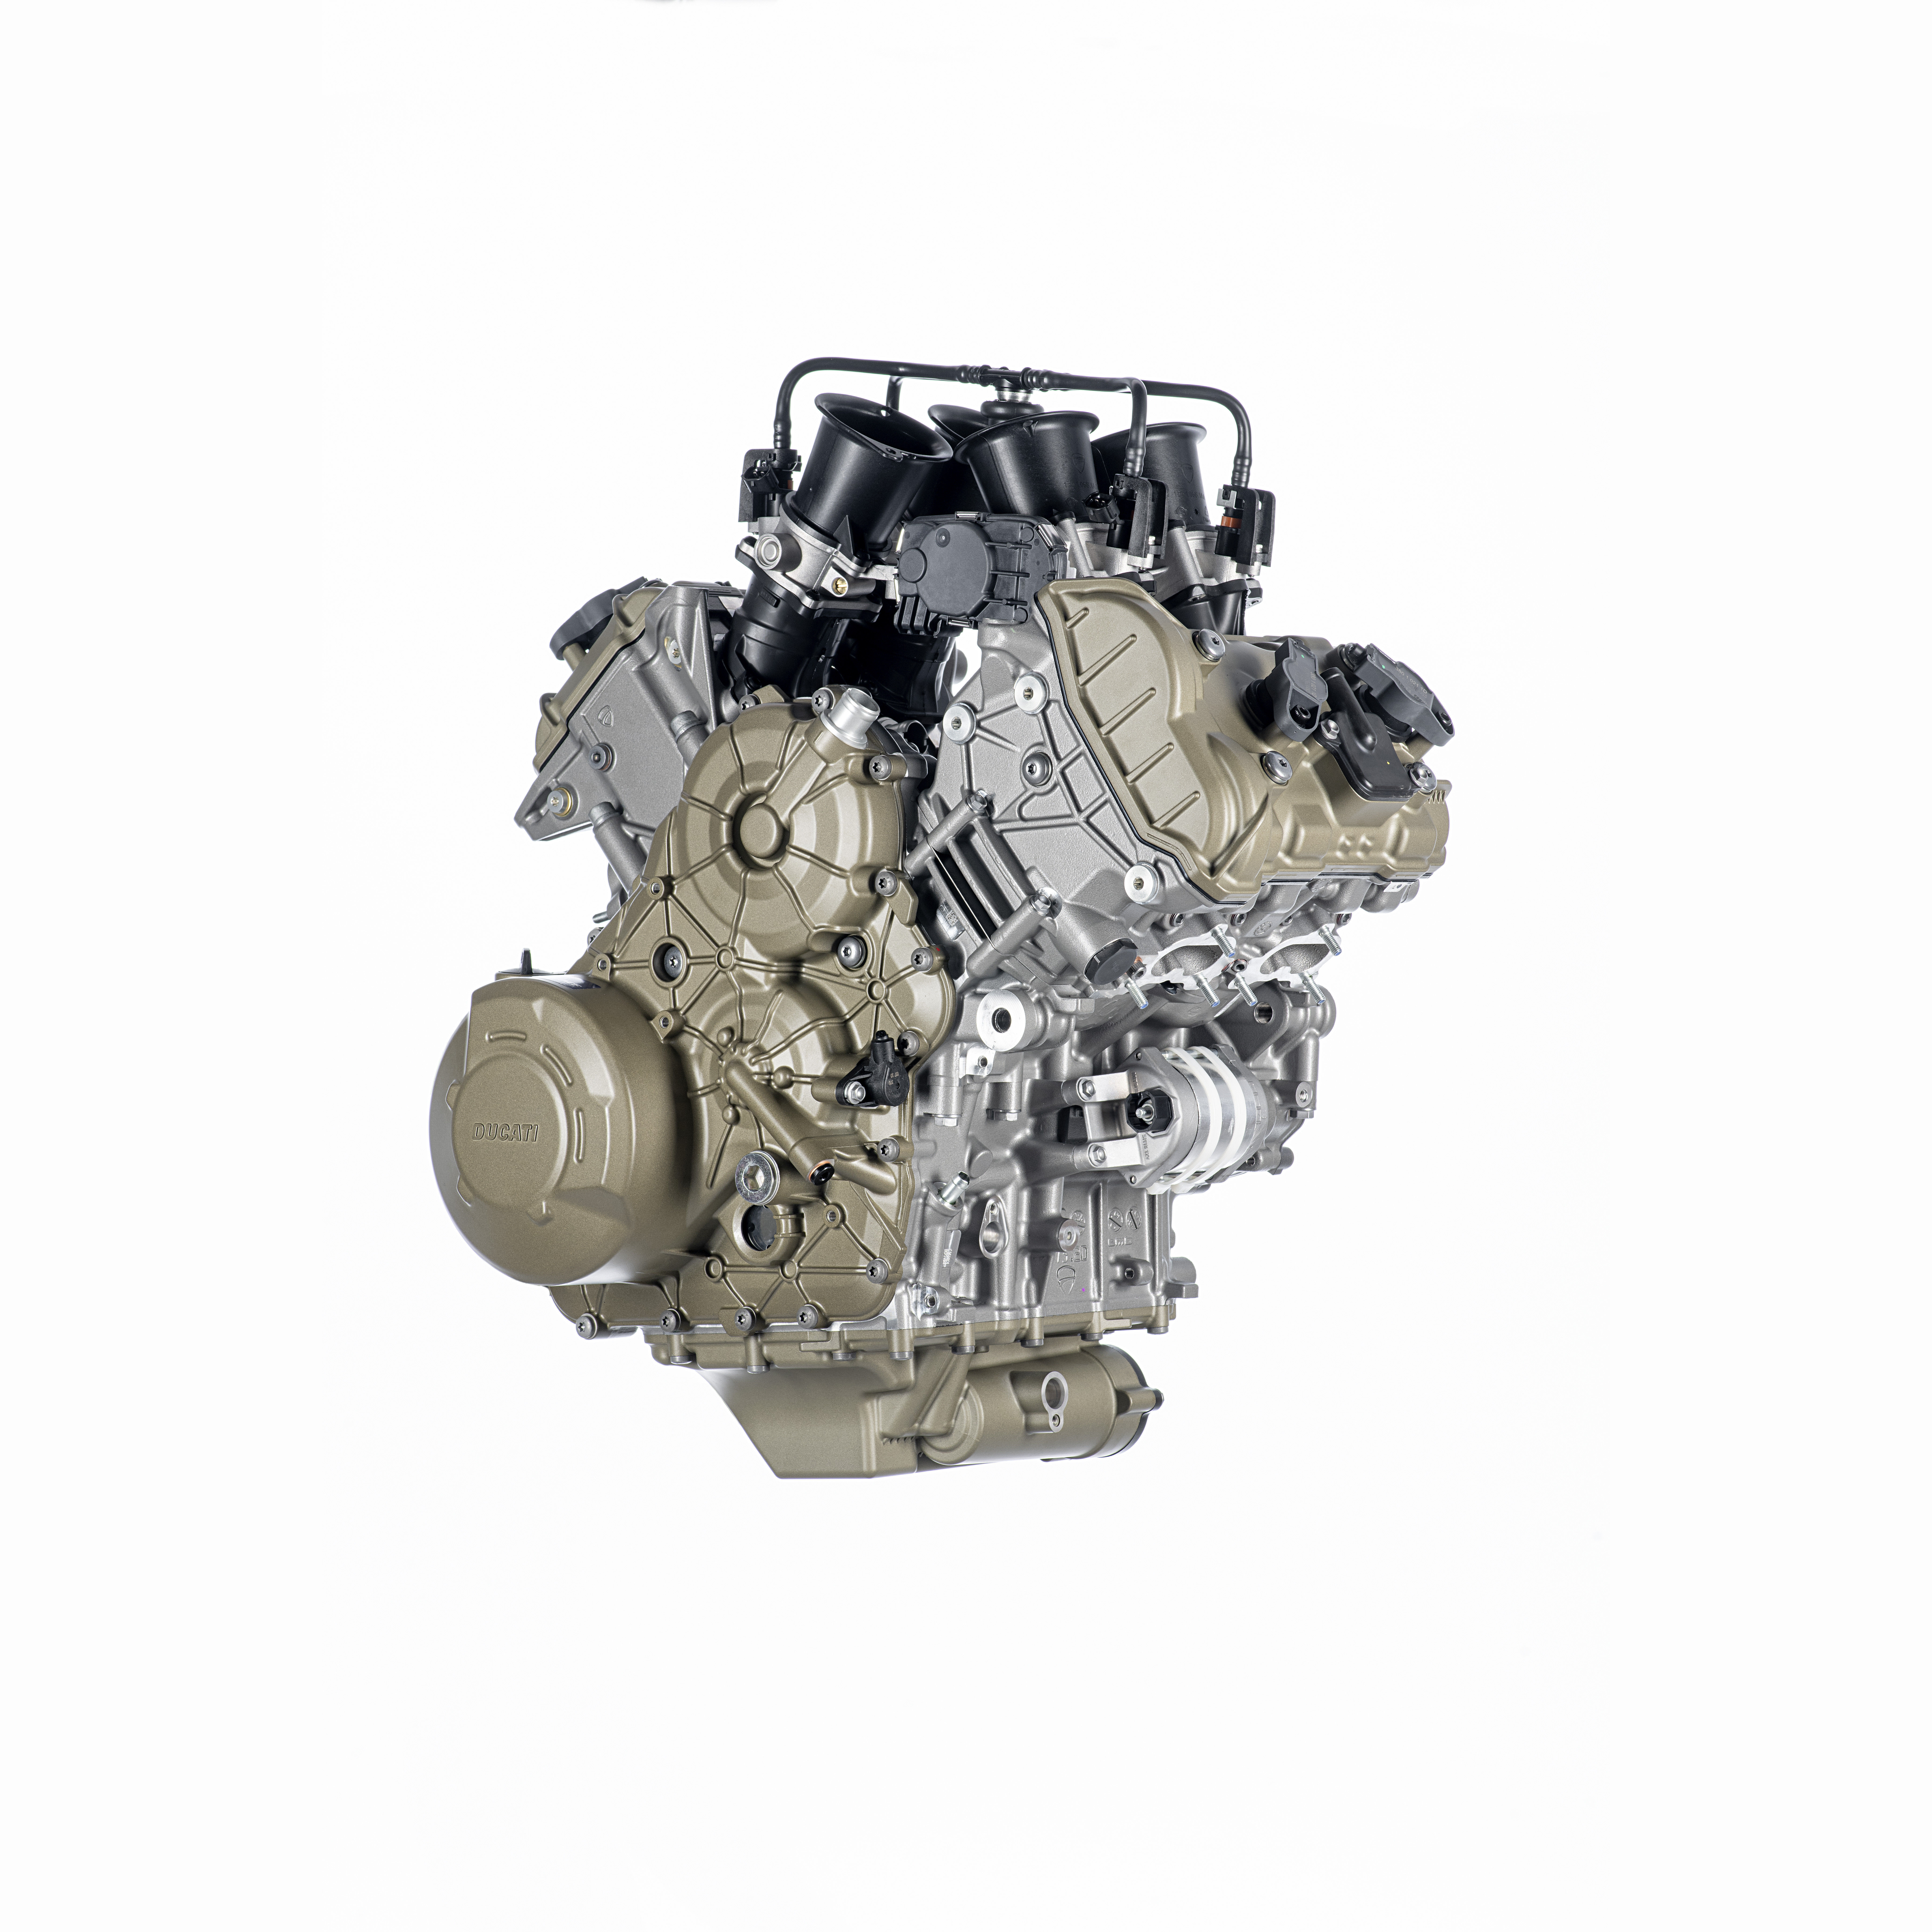 Ducati's new V4 Granturismo engine. Photo courtesy Ducati.